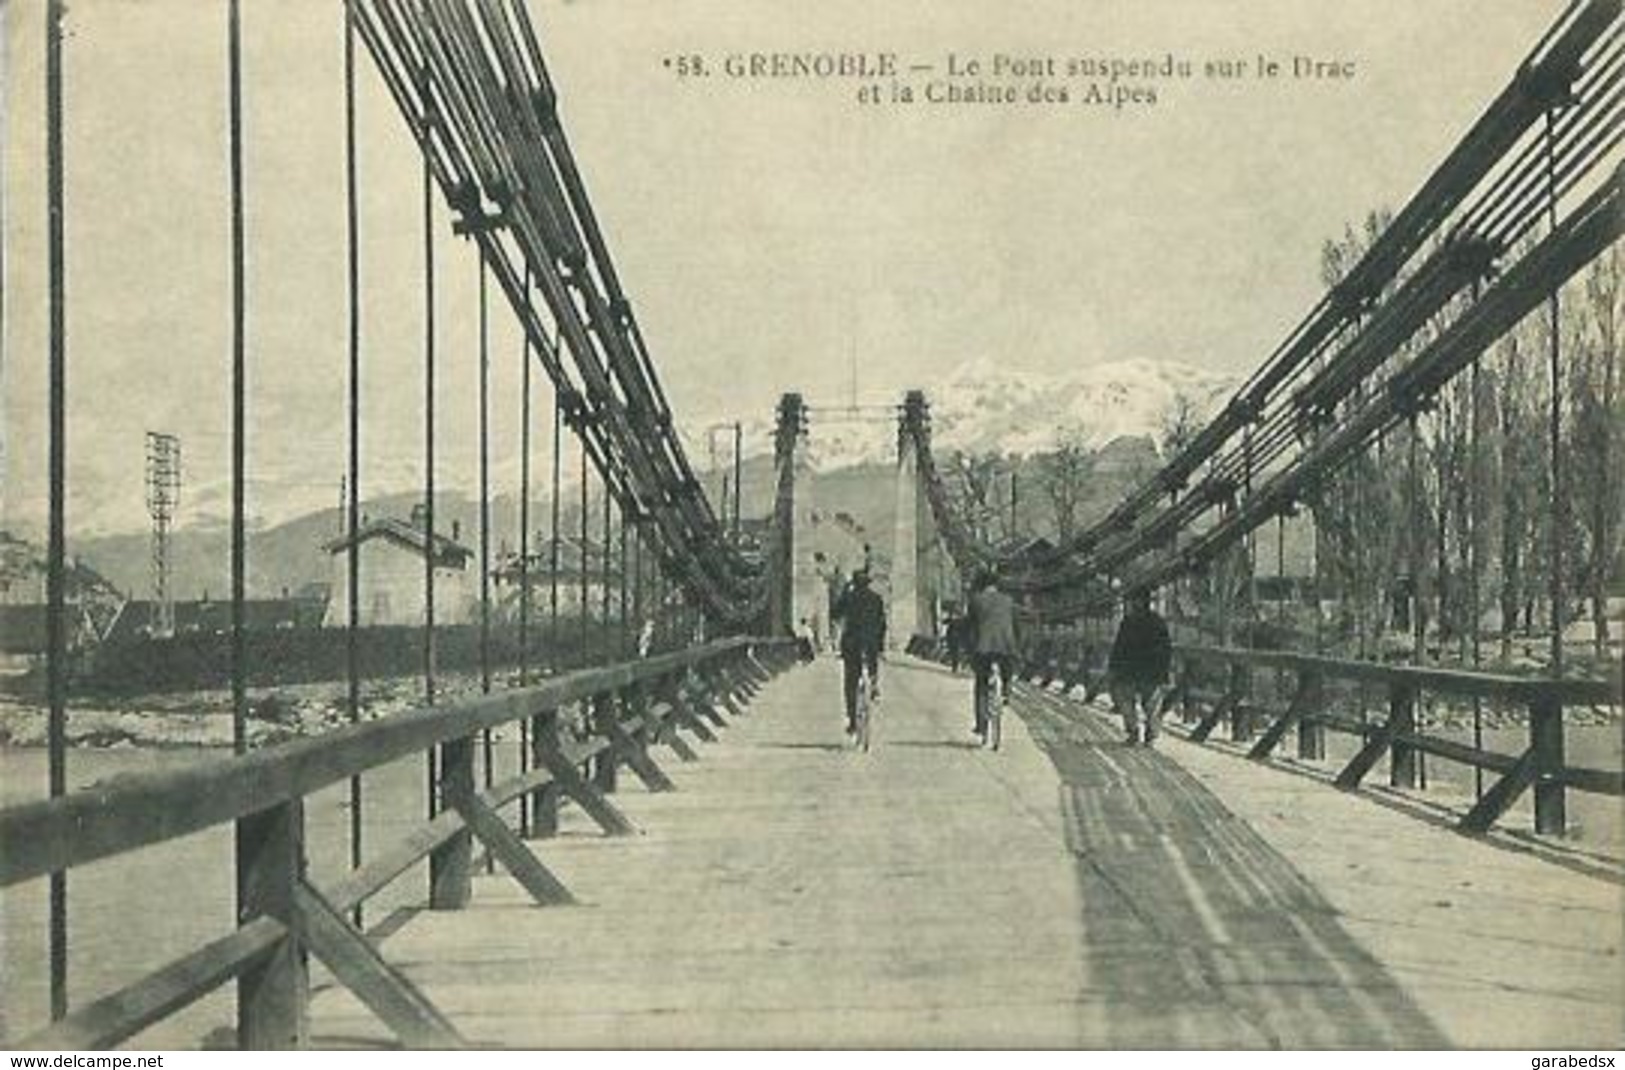 CPA De GRENOBLE - Le Pont Suspendu Sur Le Drac Et La Chaine Des Alpes. - Grenoble